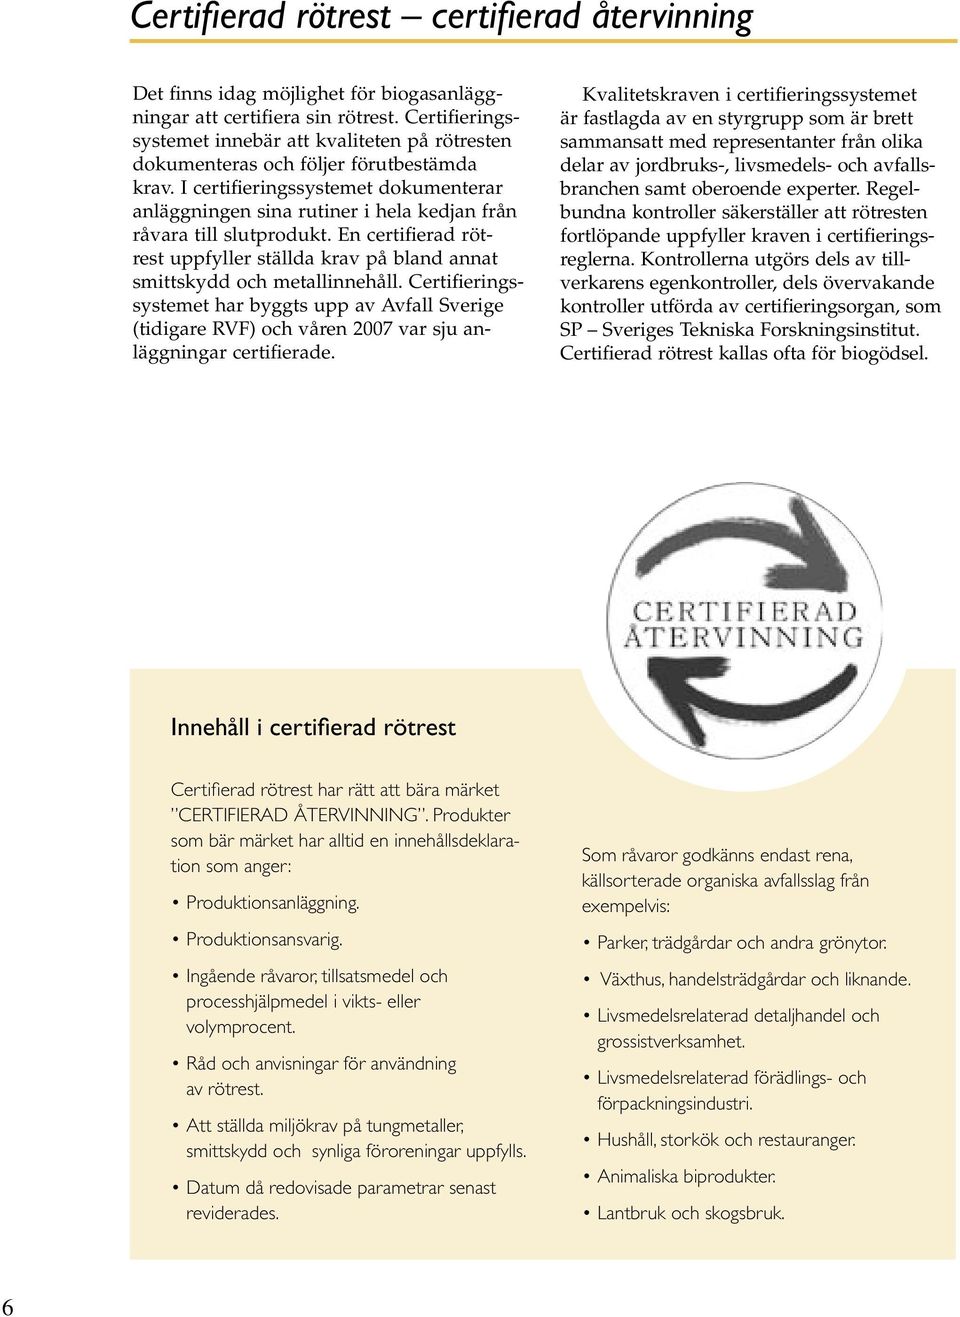 I certifieringssystemet dokumenterar anläggningen sina rutiner i hela kedjan från råvara till slutprodukt. En certifierad rötrest uppfyller ställda krav på bland annat smittskydd och metallinnehåll.